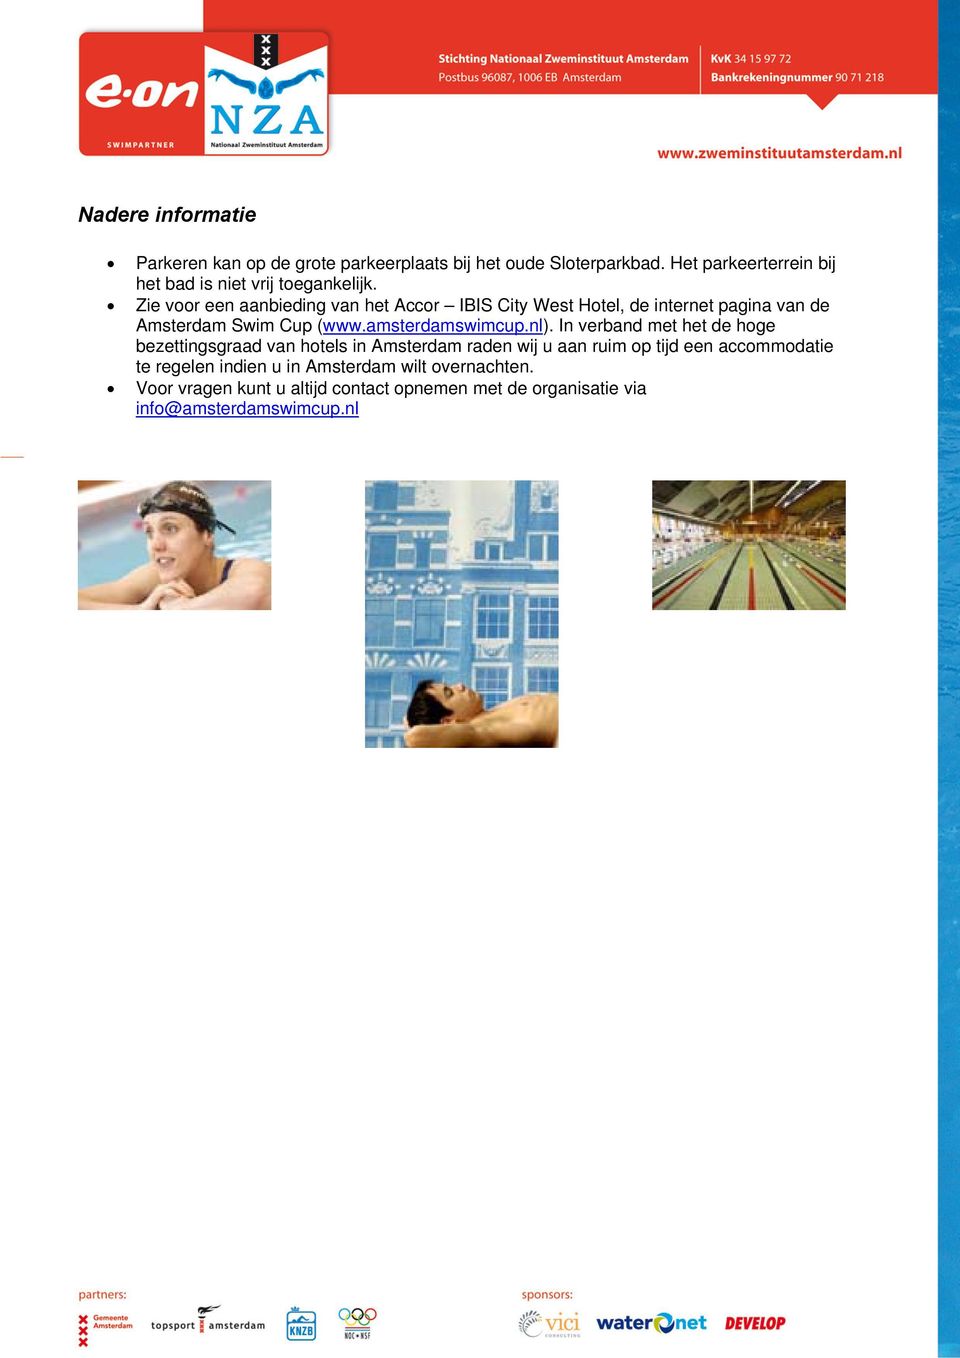 Zie voor een aanbieding van het Accor IBIS City West Hotel, de internet pagina van de Amsterdam Swim Cup (www.amsterdamswimcup.nl).